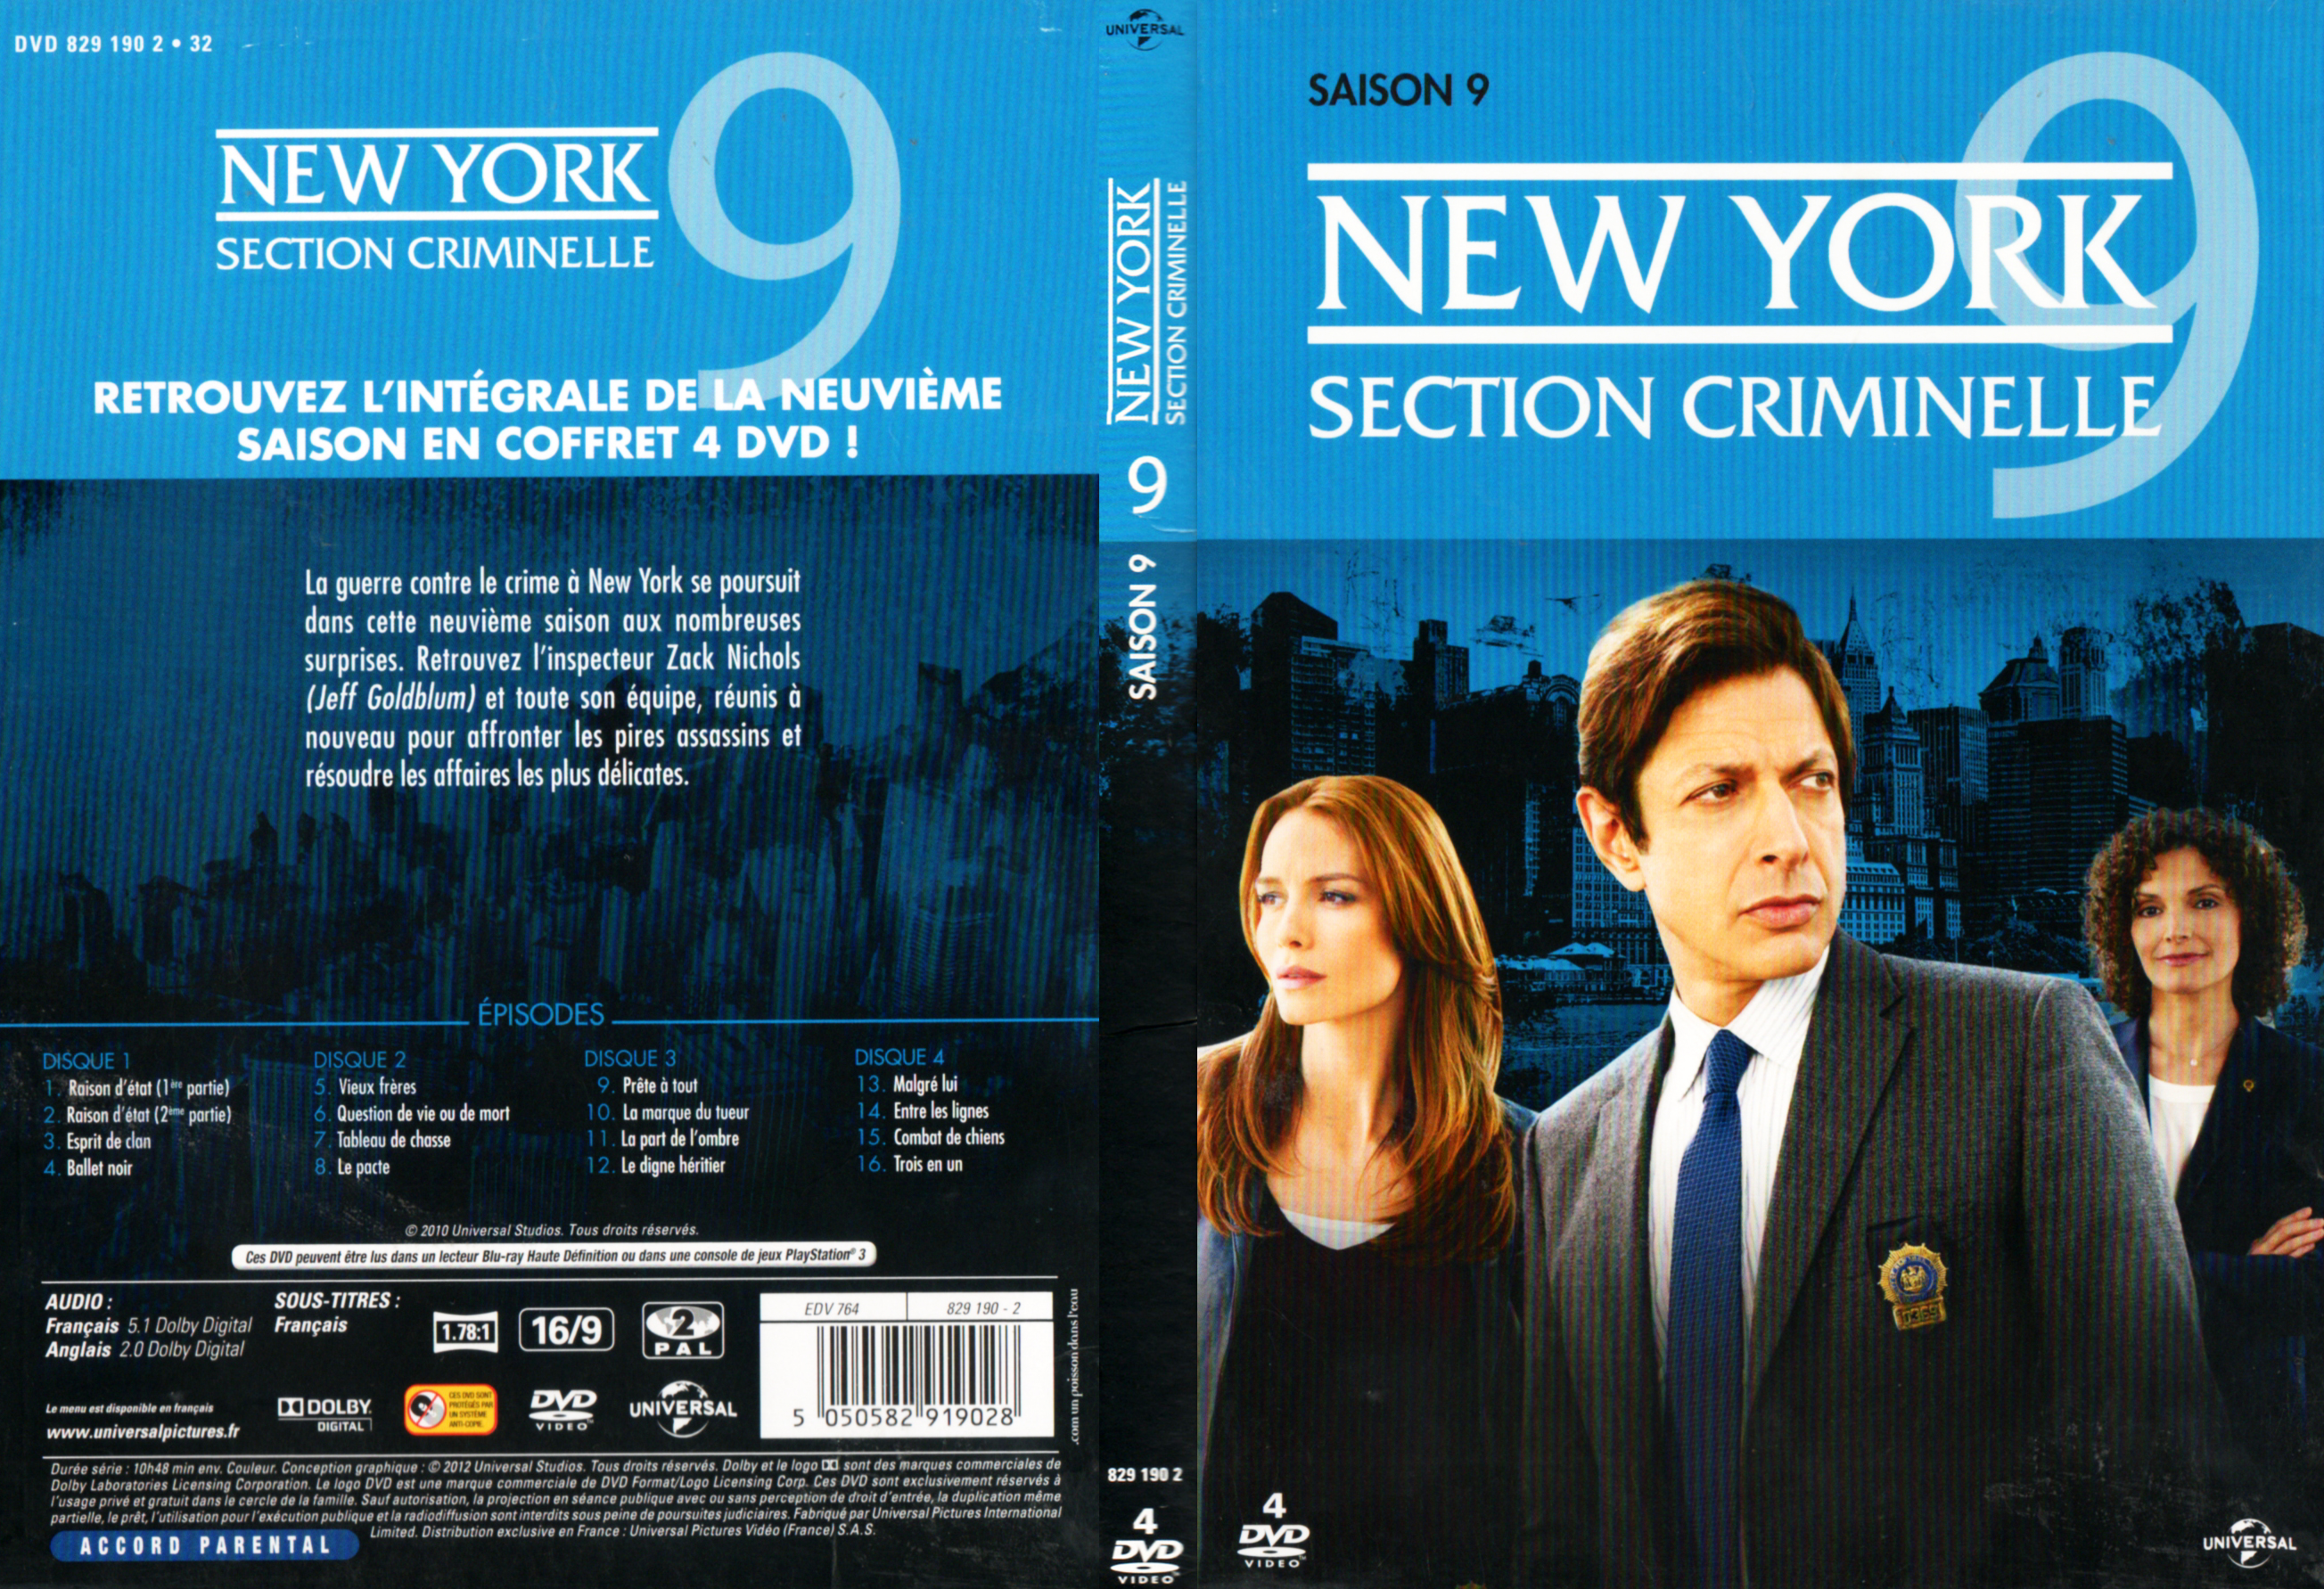 Jaquette DVD New york section criminelle saison 9